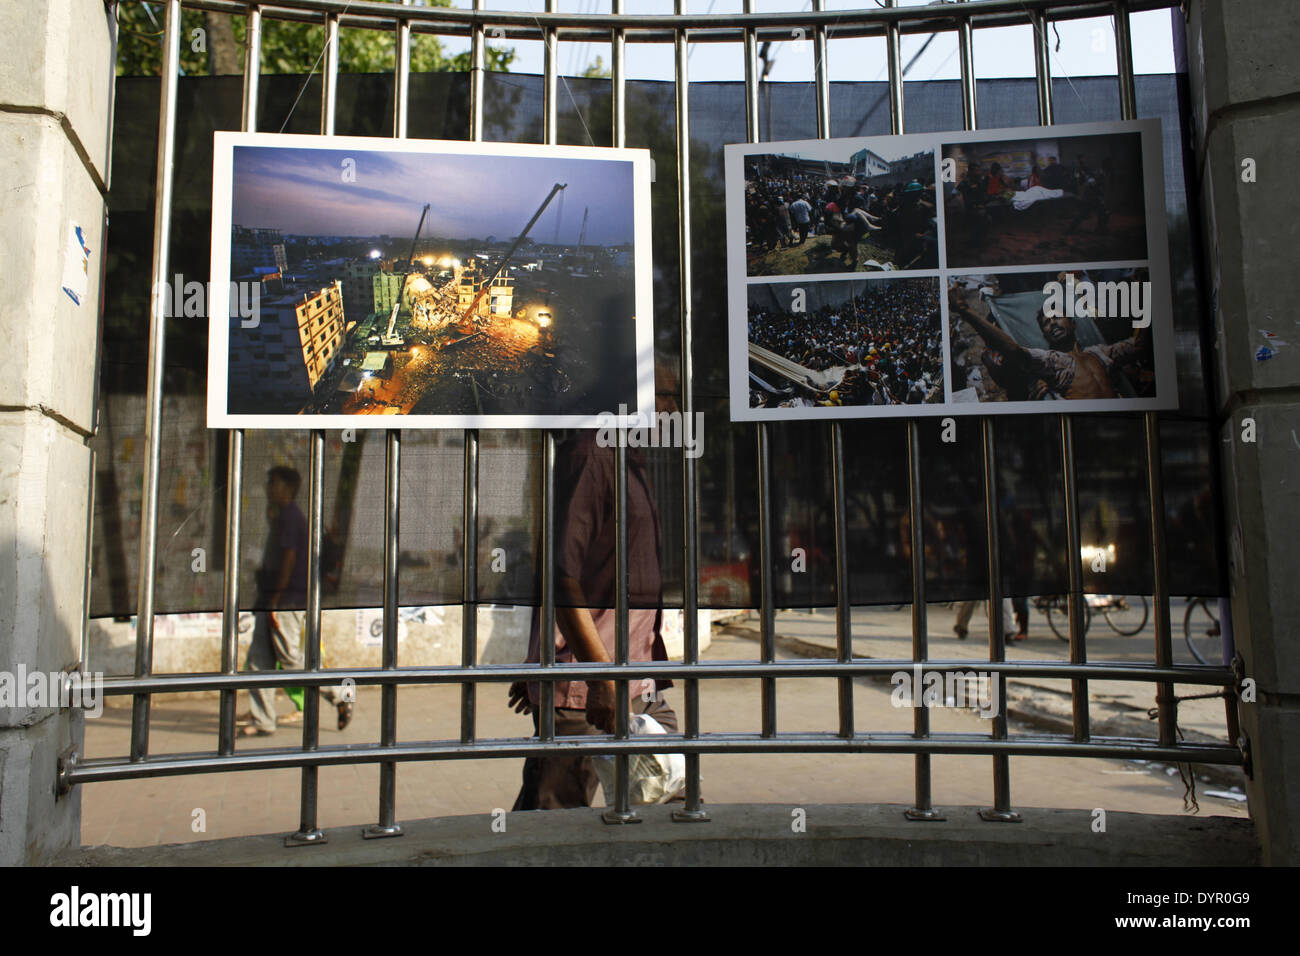 Dhaka, Bangladesch. 23. April 2014. Eine Gruppe von Fotojournalist her nationale & internationaler Medien in Bangladesch wird ein Jahr unvergessliche Tragödie von Rana Plaza, im Gedenken an seine Opfer durch die Veranstaltung einer Fotoausstellung mit dem Titel '' Aftermath: Rana Plaza'' Respekt zollen. Die Ausstellung eröffnet im 23. April 2014 bei Sohrawardi Uddyan, Dhaka.William Hanna, präsentierte Ambasedor Europäische Union Delegation nach Bangladesch als Chef Gast & Hanne Fugl Eskjaer, Botschafter der Botschaft von Dänemark in Bangladesch präsentiert als special Guest. © ZUMA Press, Inc./Alamy Live News Stockfoto